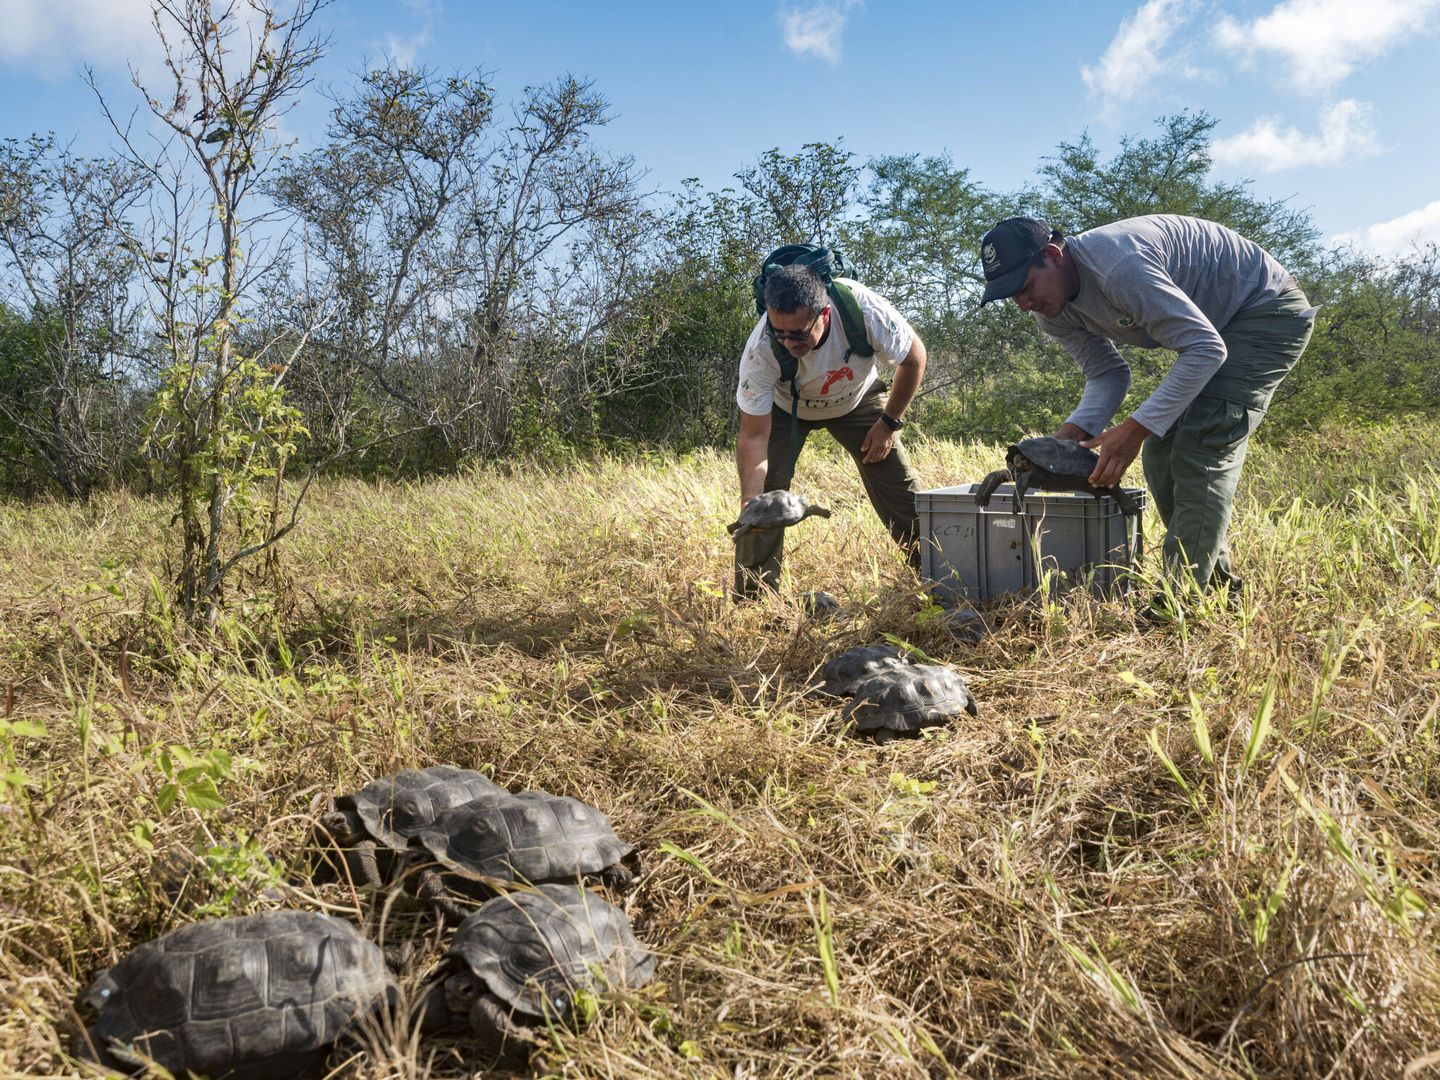 Imagen cedida por el Parque Nacional Galapagos, en Ecuador, donde comer tortugas también es habitual. En la foto, los trabajadores del parque cargando a unas tortugas para su liberación. (EFE/Parque Nacional Galapagos)